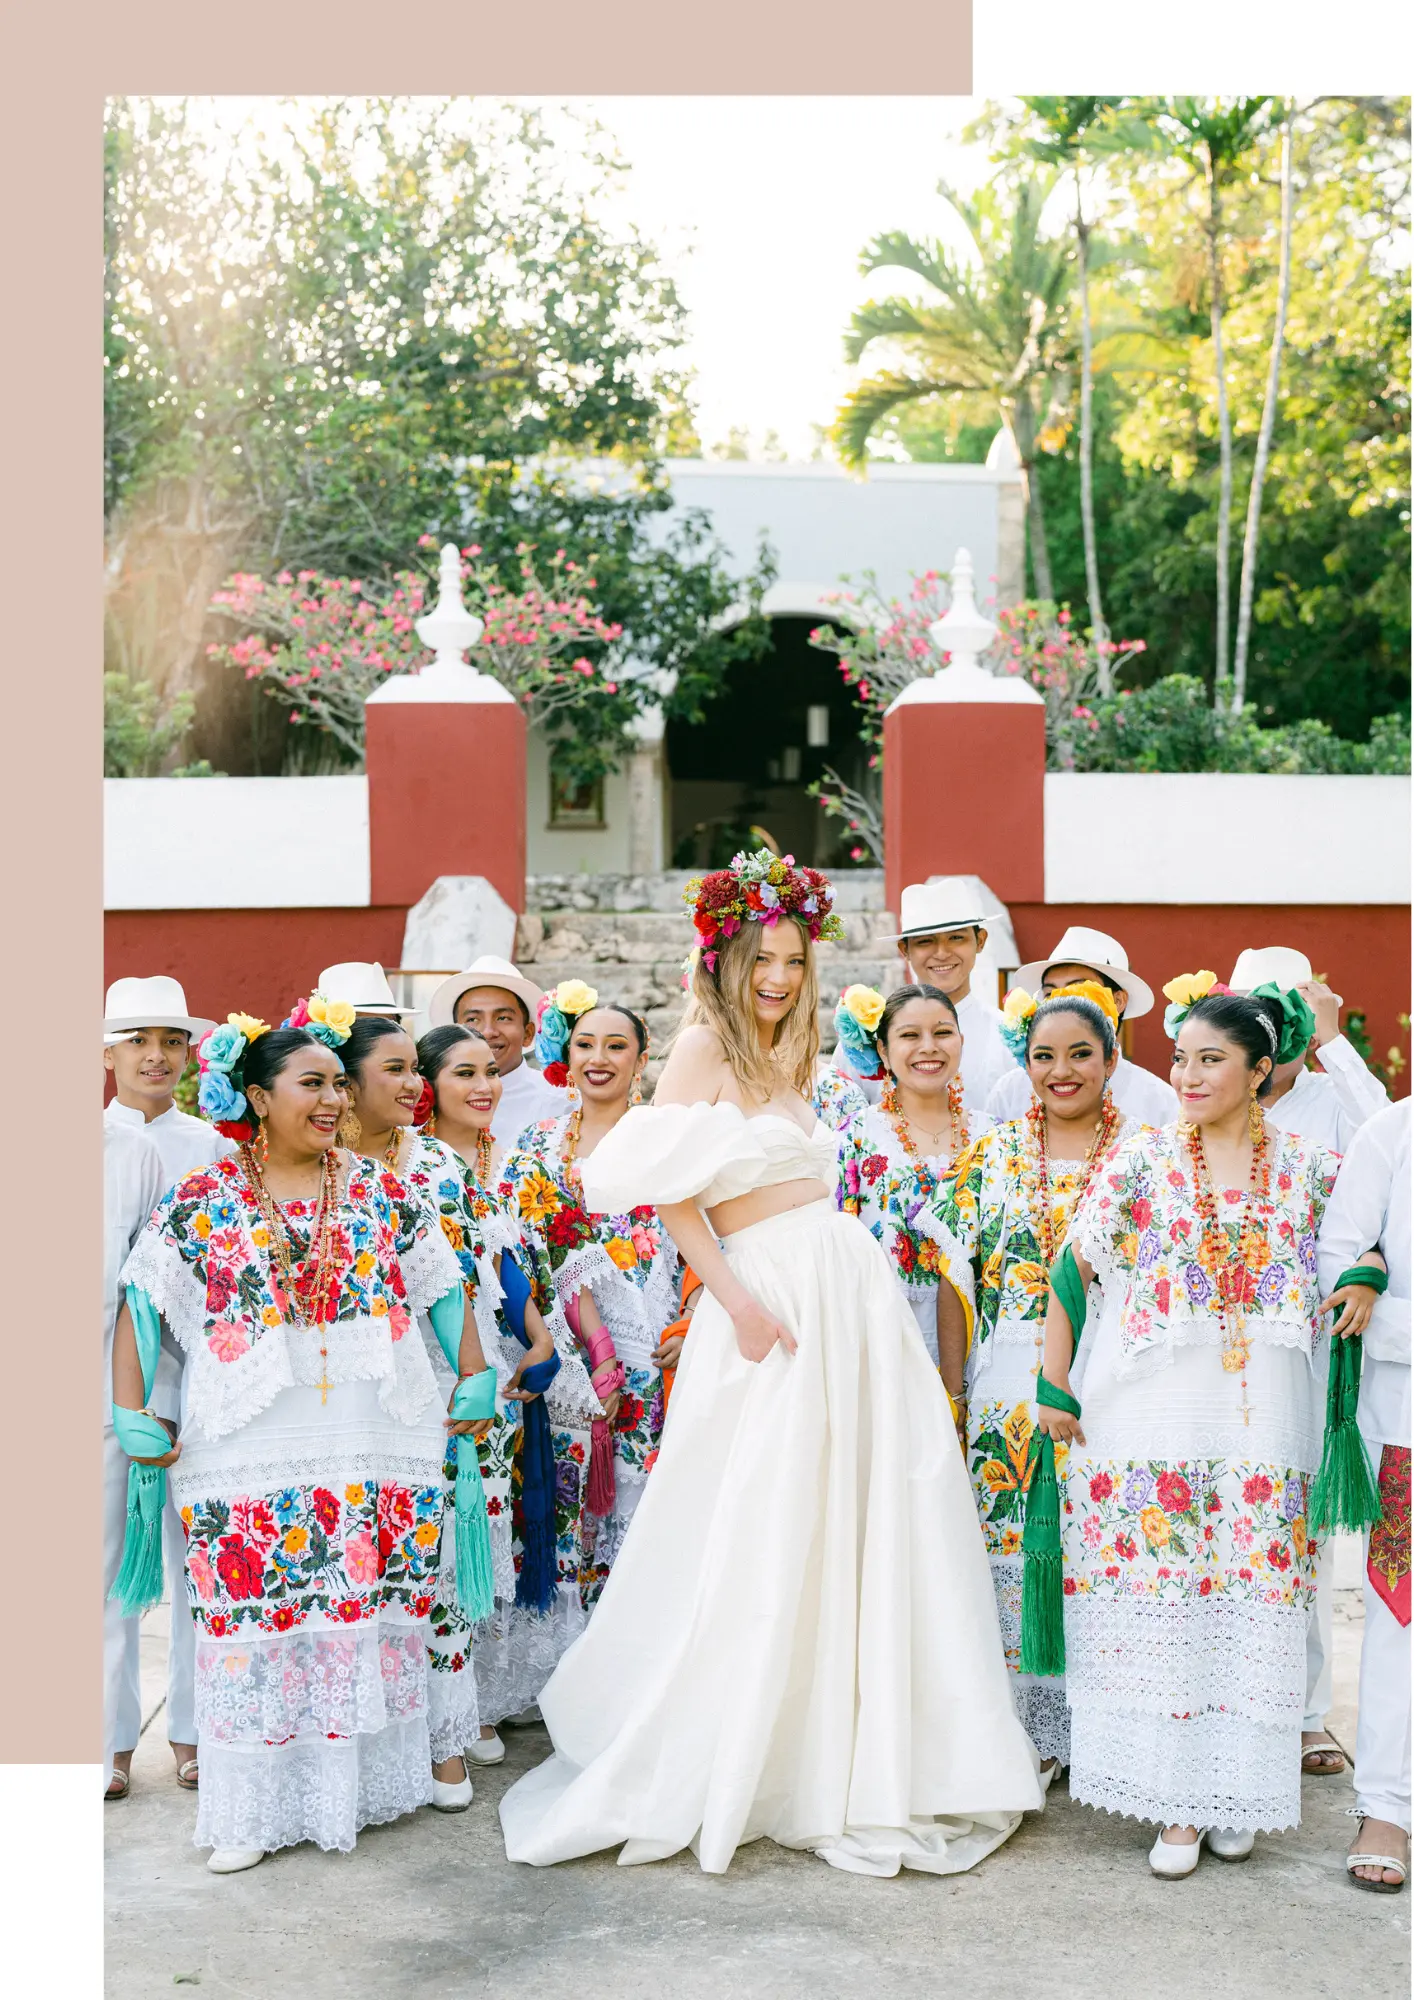 Luxury wedding venue in Yucatan Peninsula Mexico, Chable Yucatan